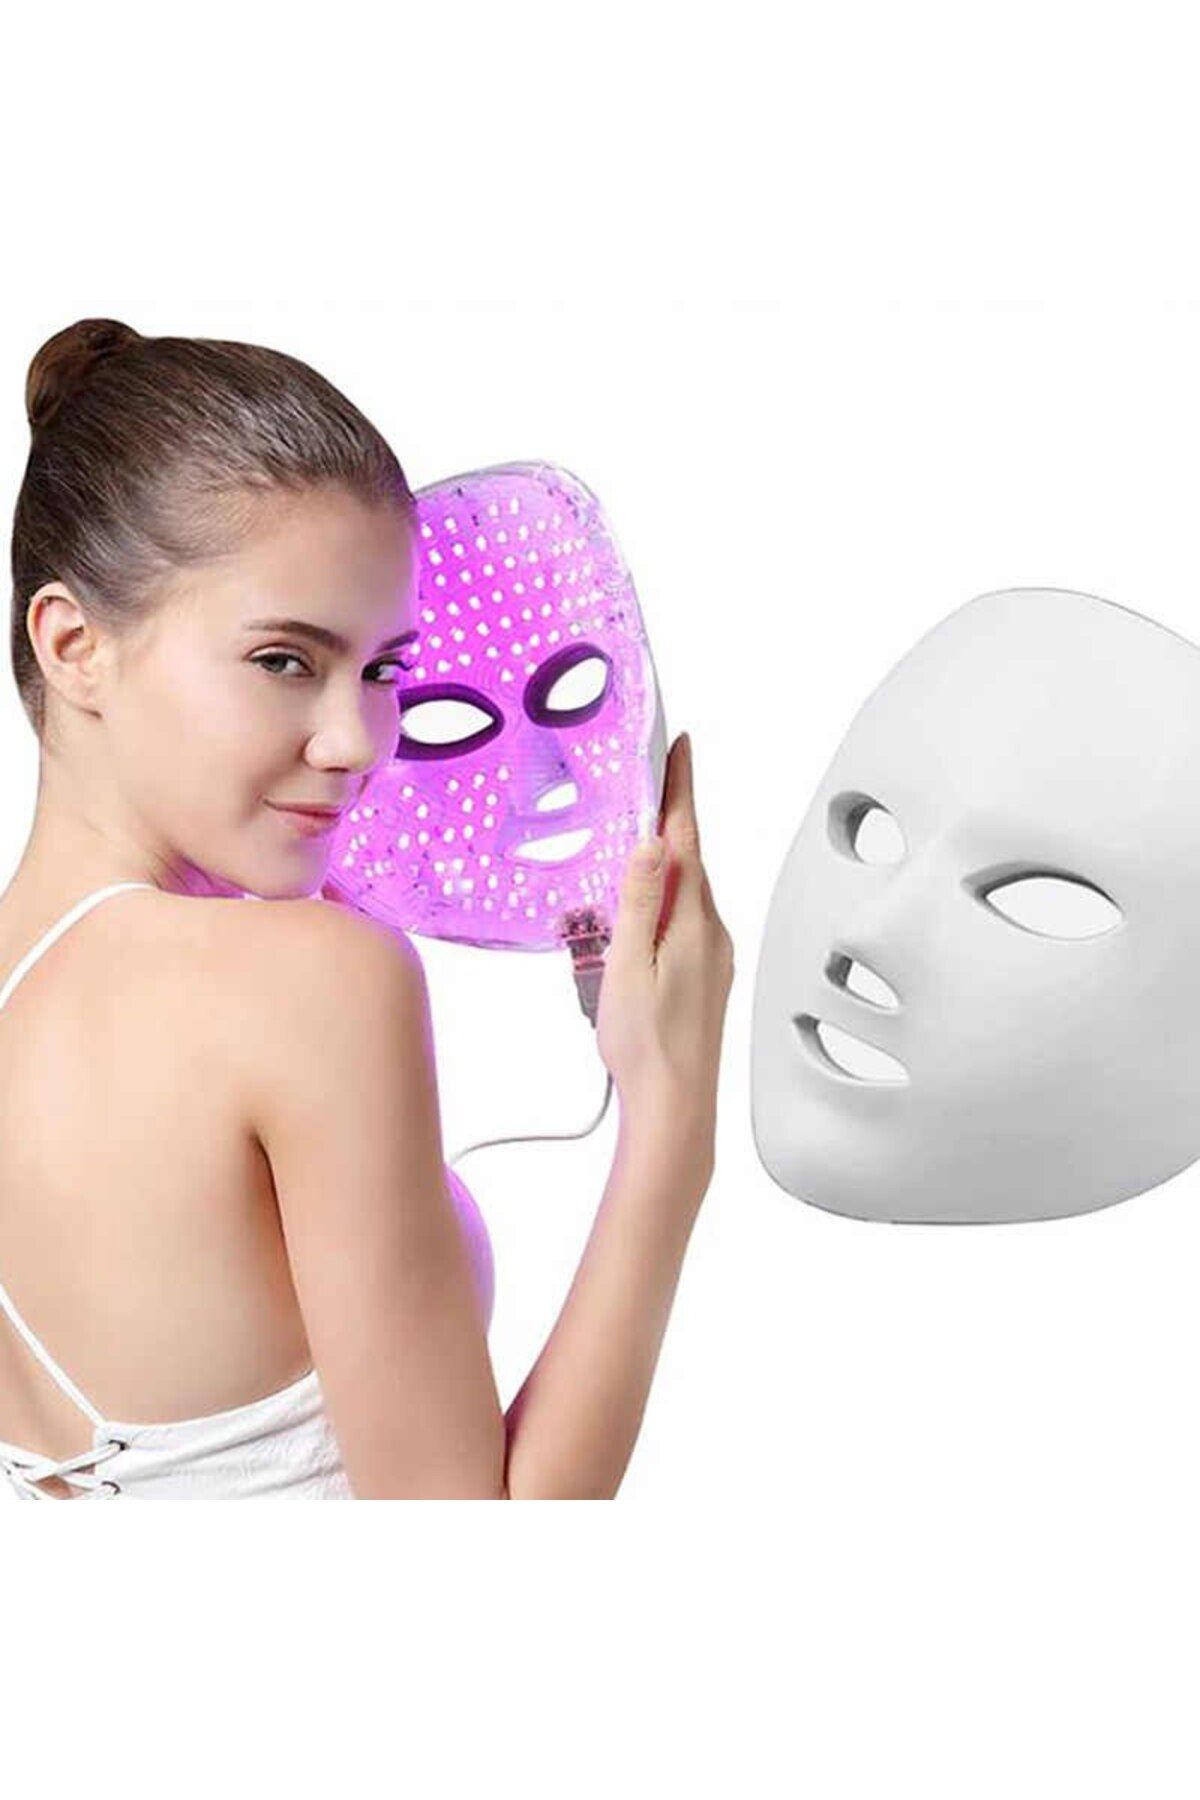 Jewval Foton Terapi Mezoterapi Maskesi 7 Renk Multifonksiyonel Led Güzellik Sırları Evde Güzellik Merkezi